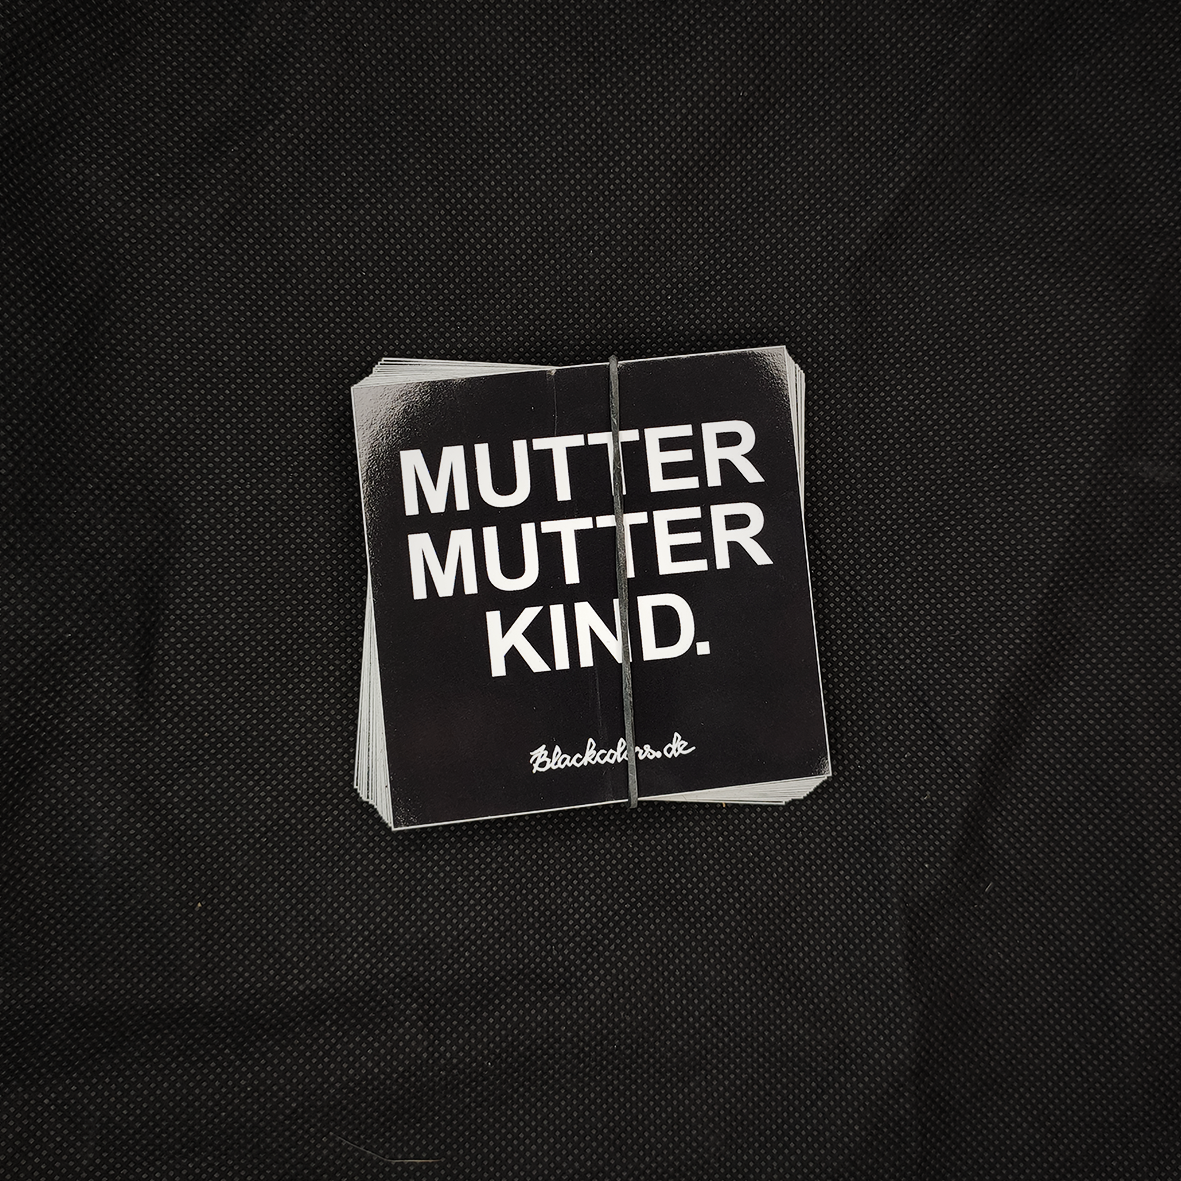 "MUTTER MUTTER KIND." - Sticker - 25 Stück